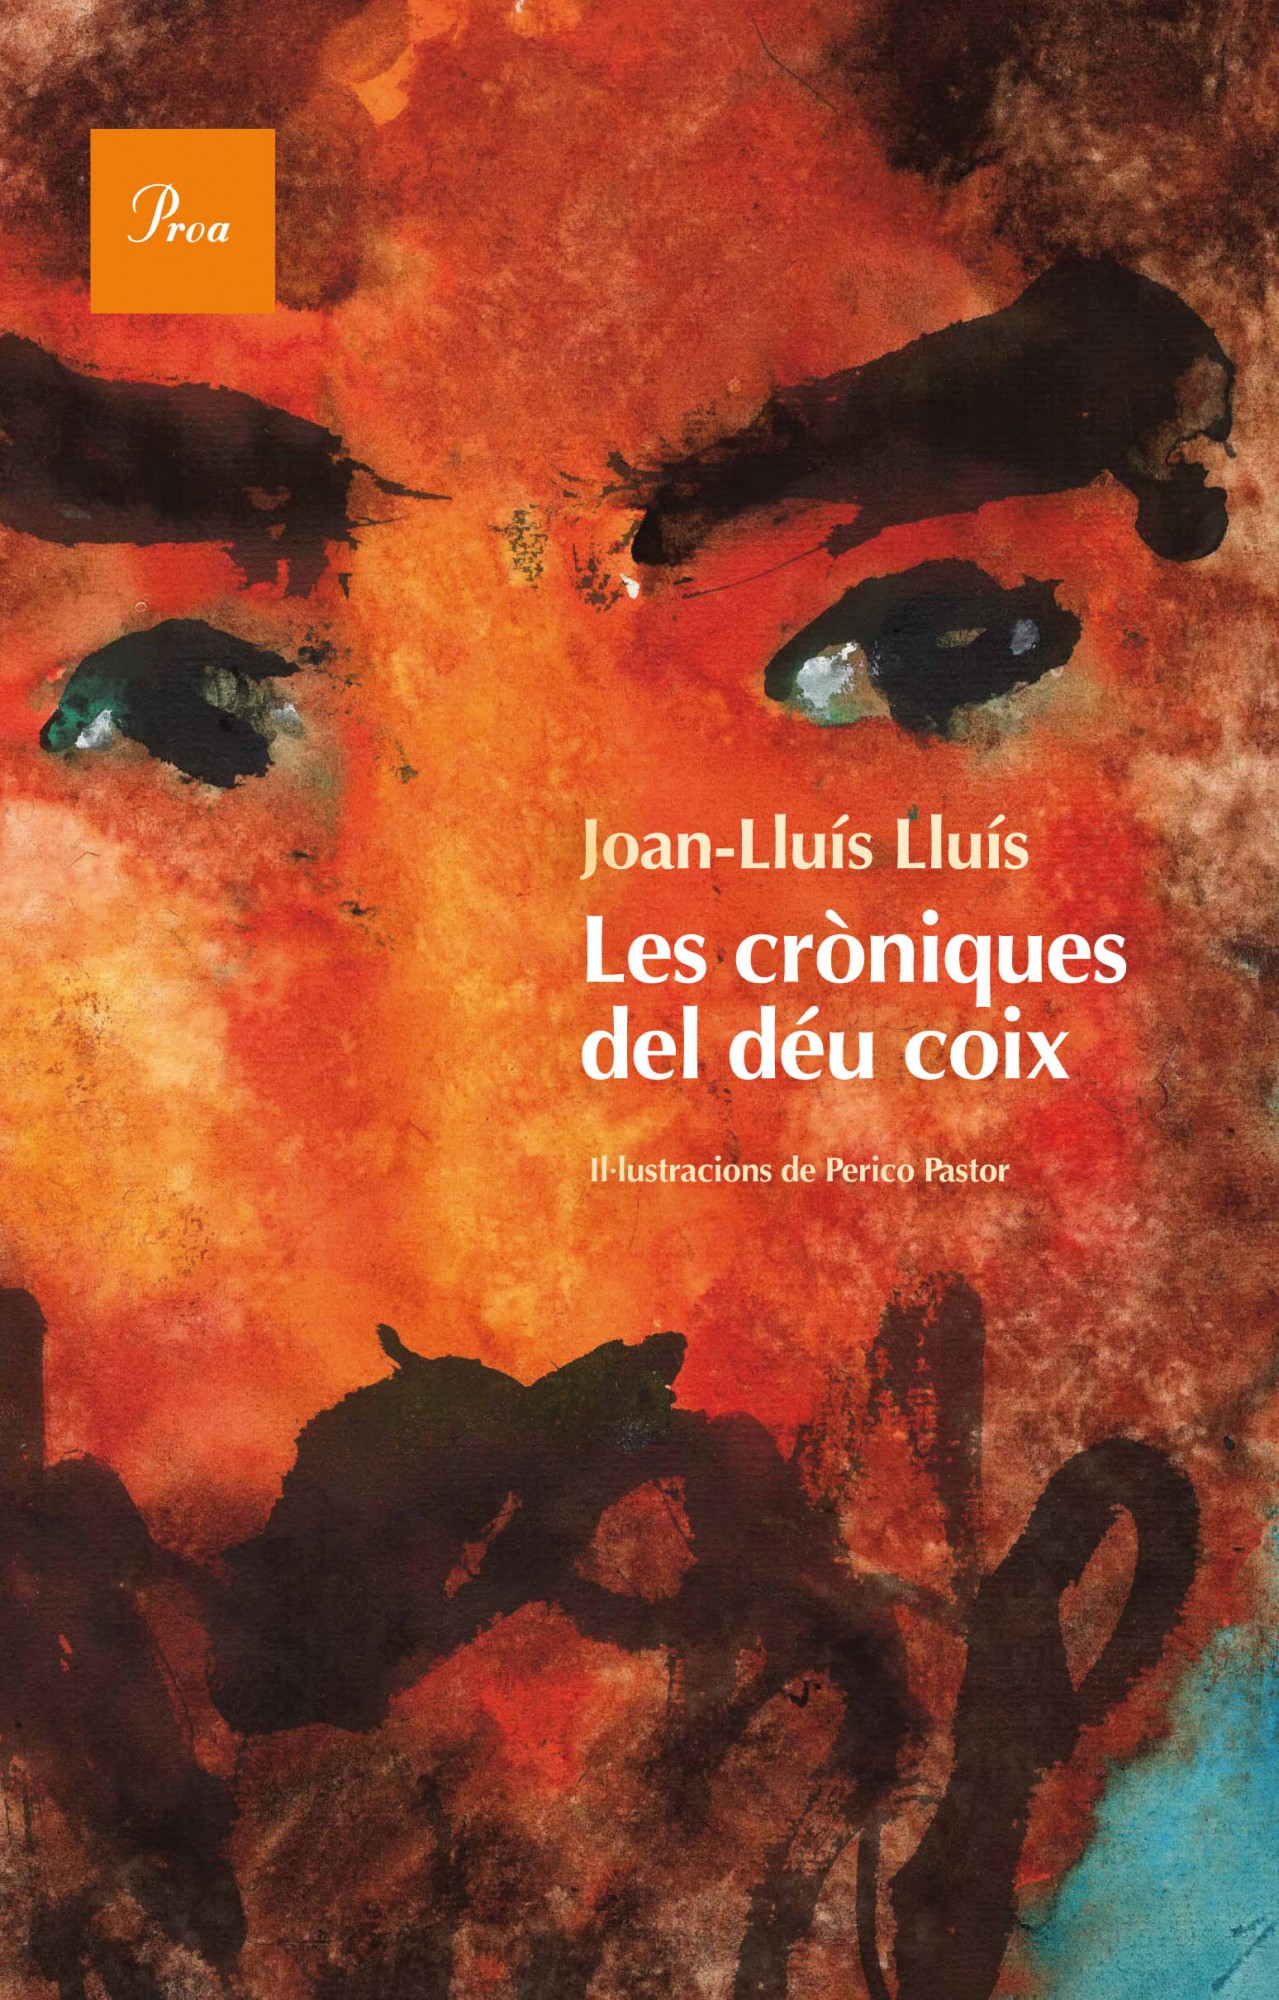 Joan-Lluís Lluís: Les Cròniques del déu coix (català language, 2013, Proa)